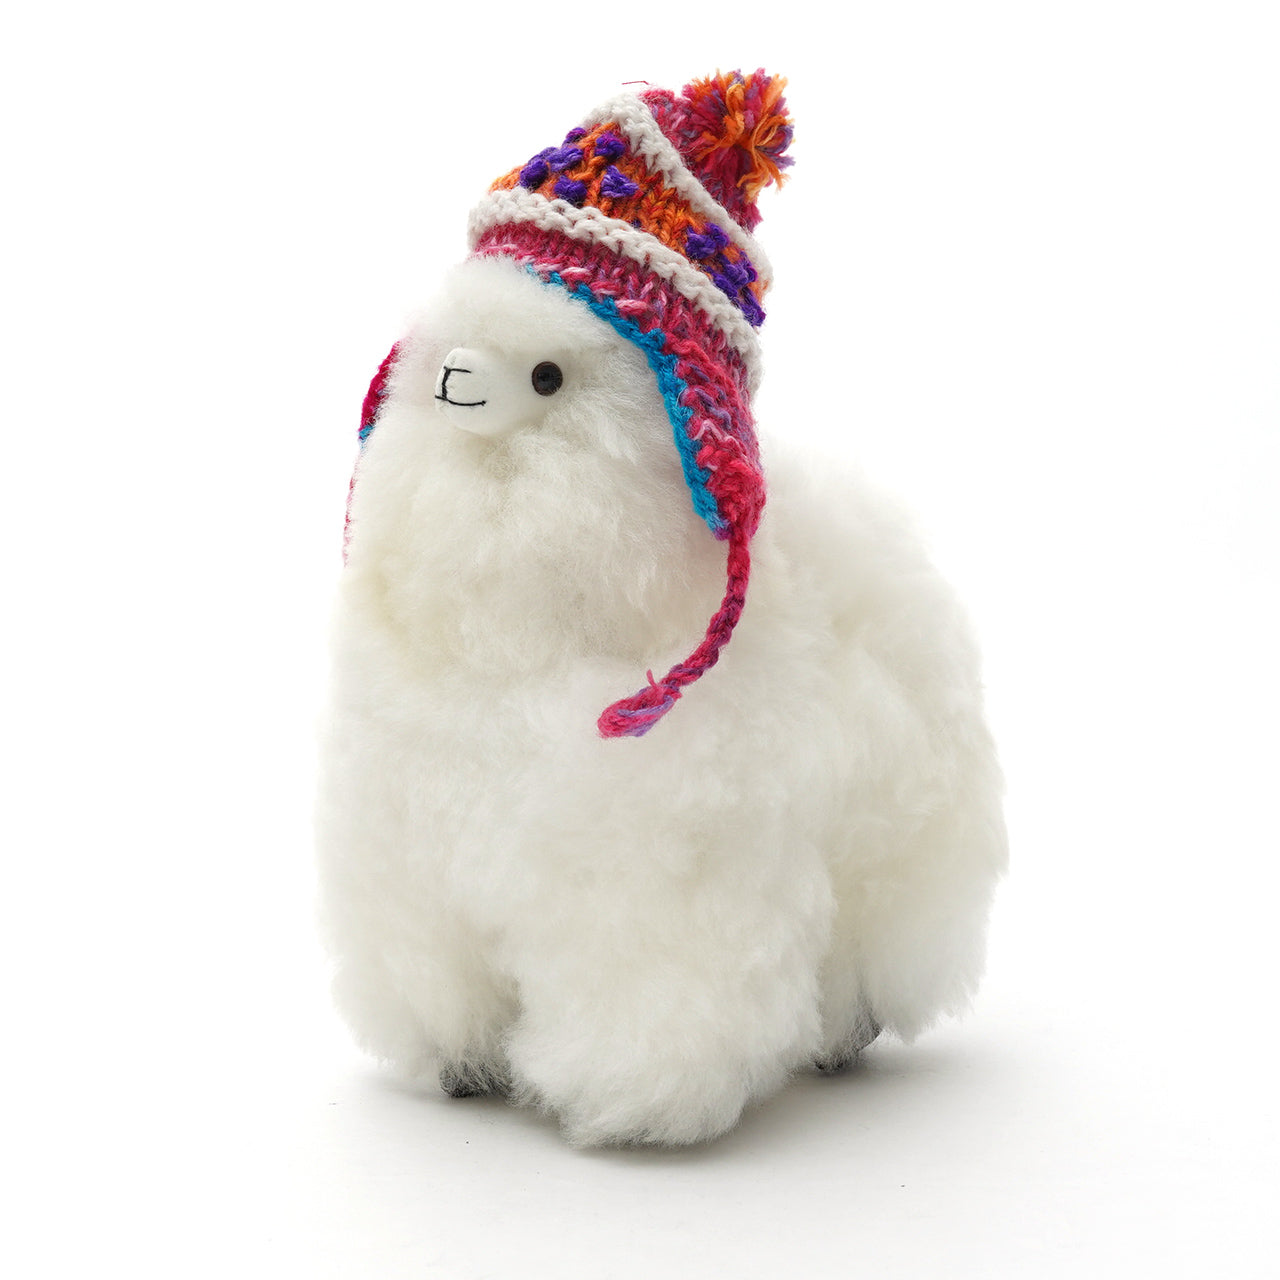 DEL SOL デルソル ペルー アルパカ ぬいぐるみ Peru alpaca Doll 雑貨 プレゼント ギフト